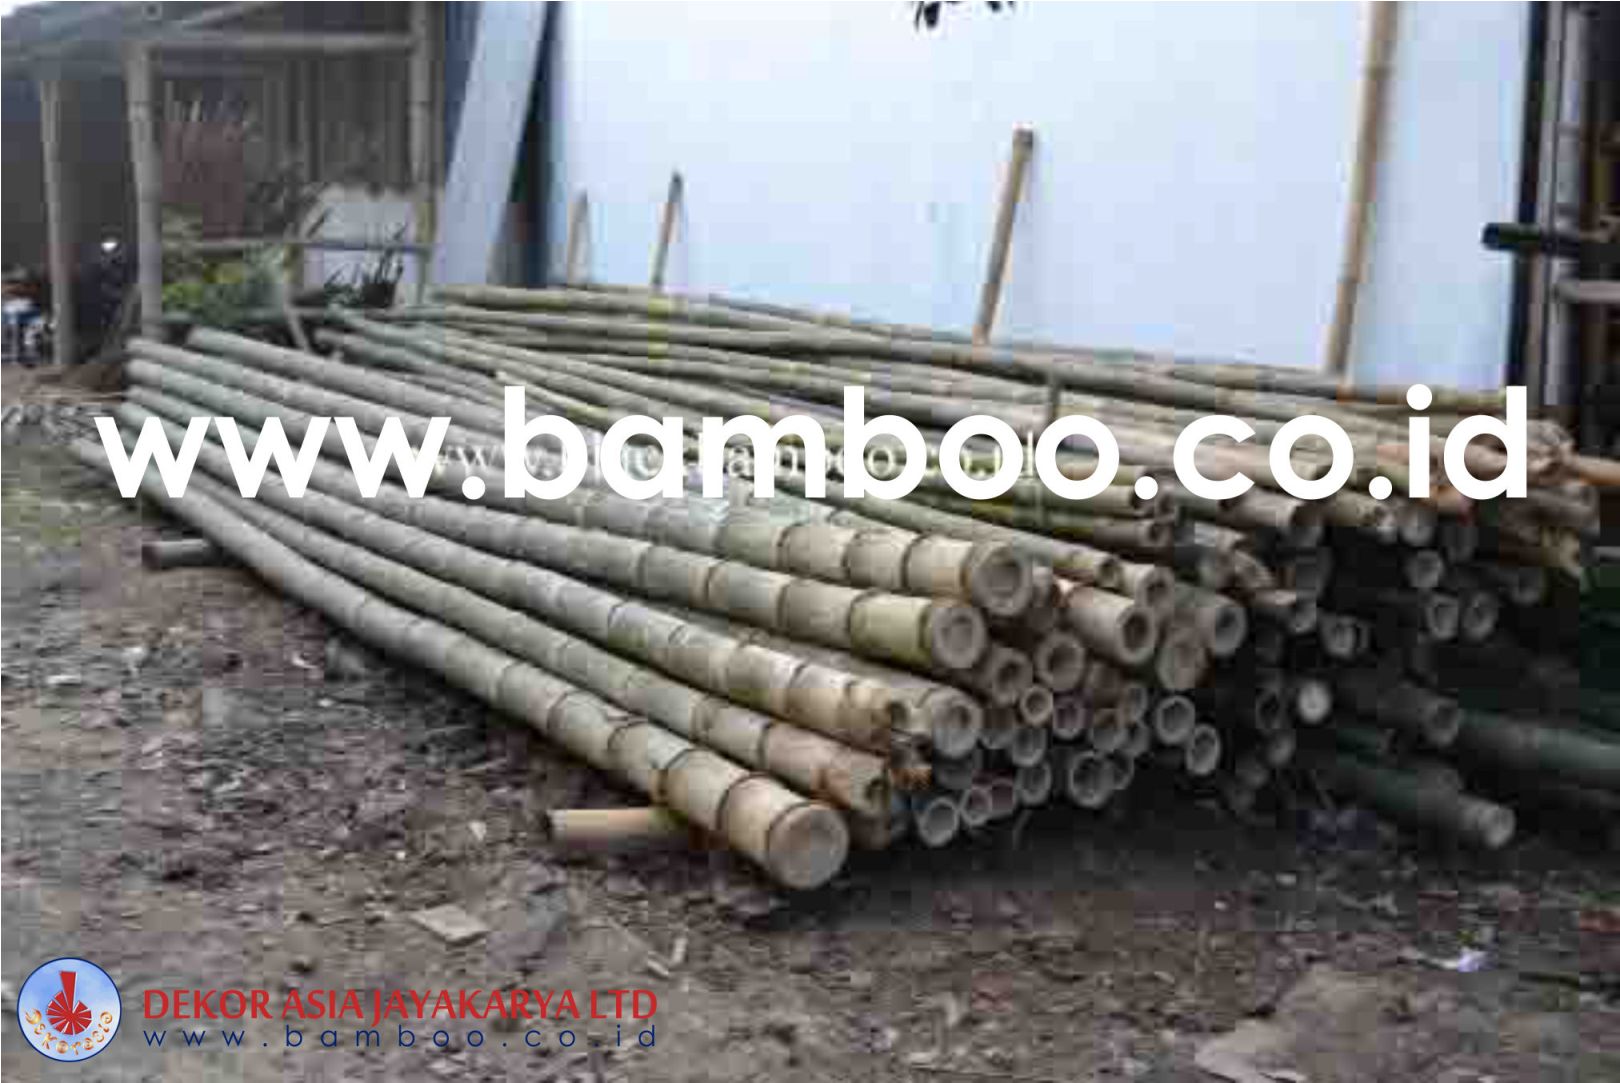 Bamboo Pole